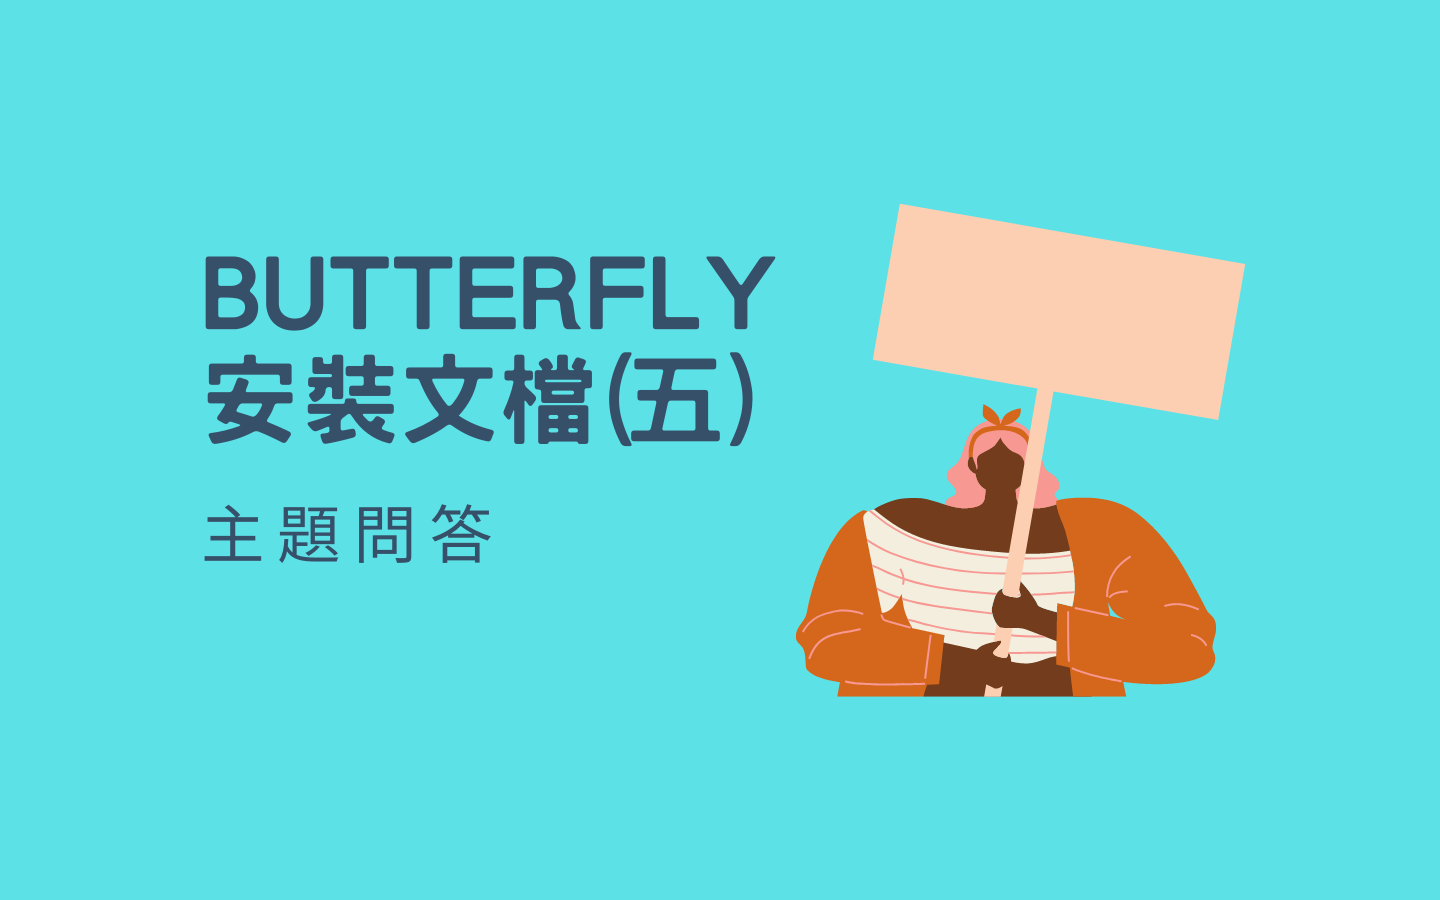 Butterfly 安裝文档(五) 主题问答